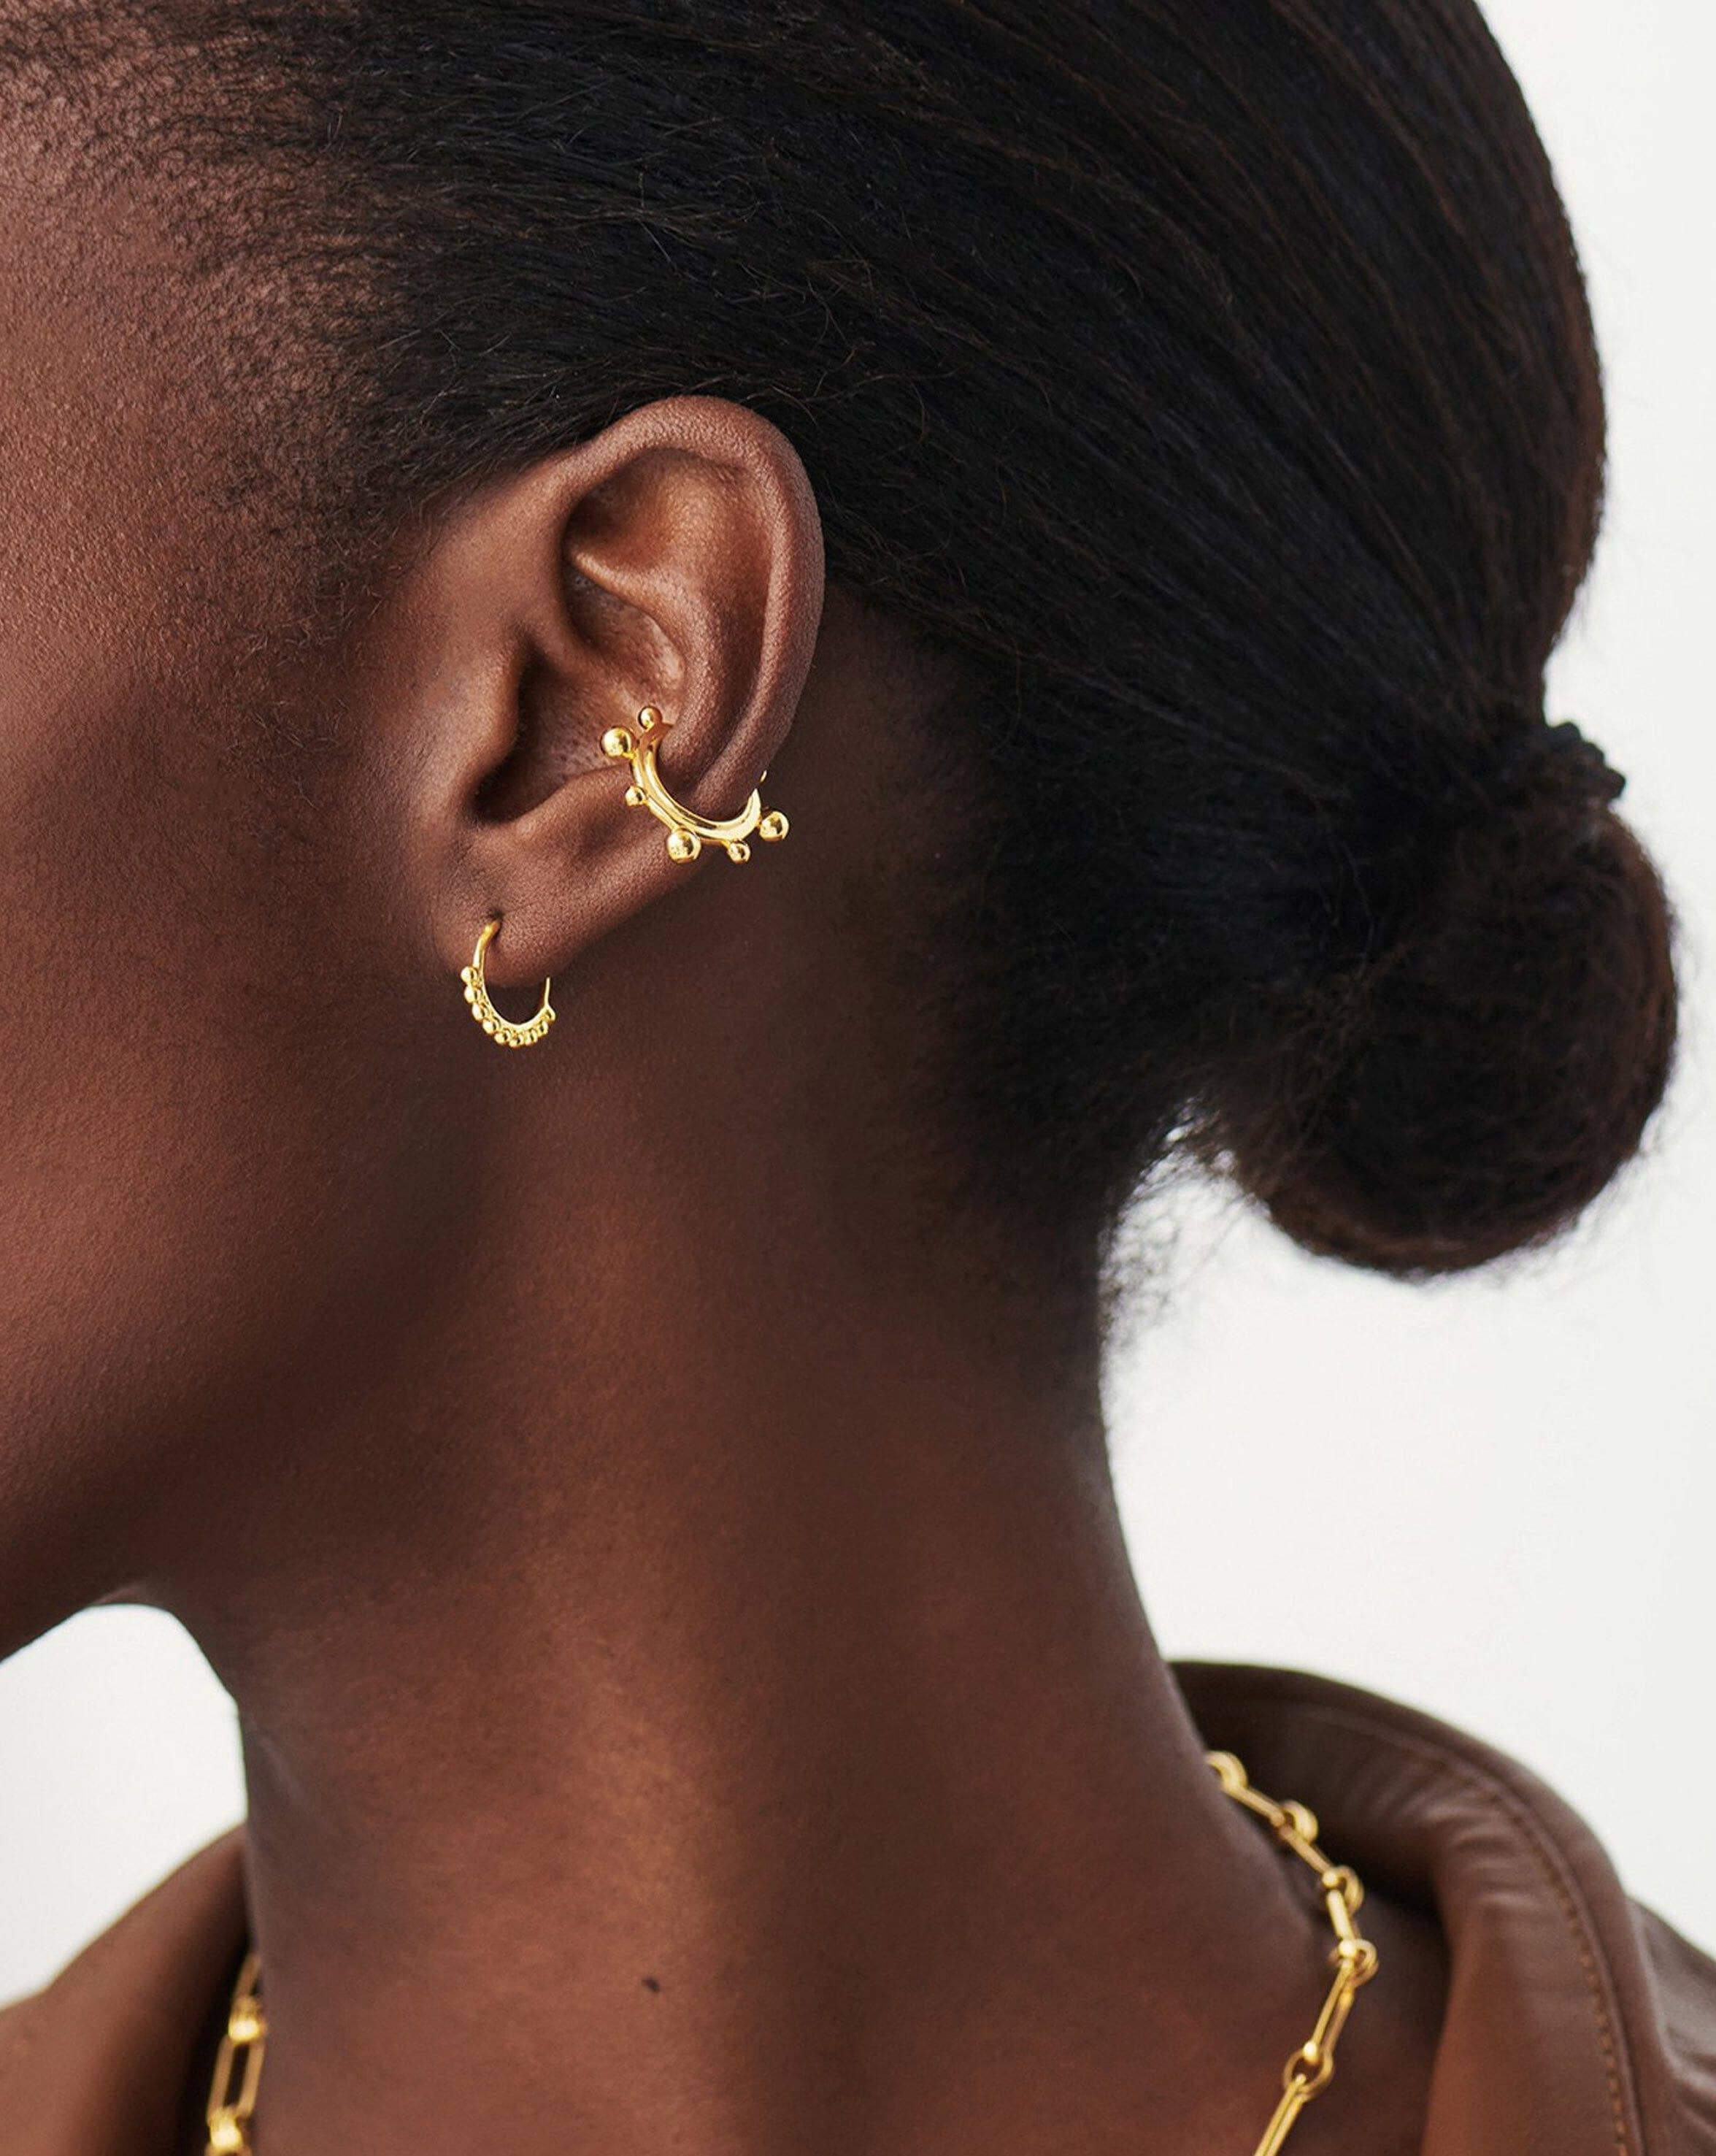 Lucy Williams Mini Beaded Hinged Hoop Earrings | 18ct Gold Plated Vermeil Earrings Missoma 